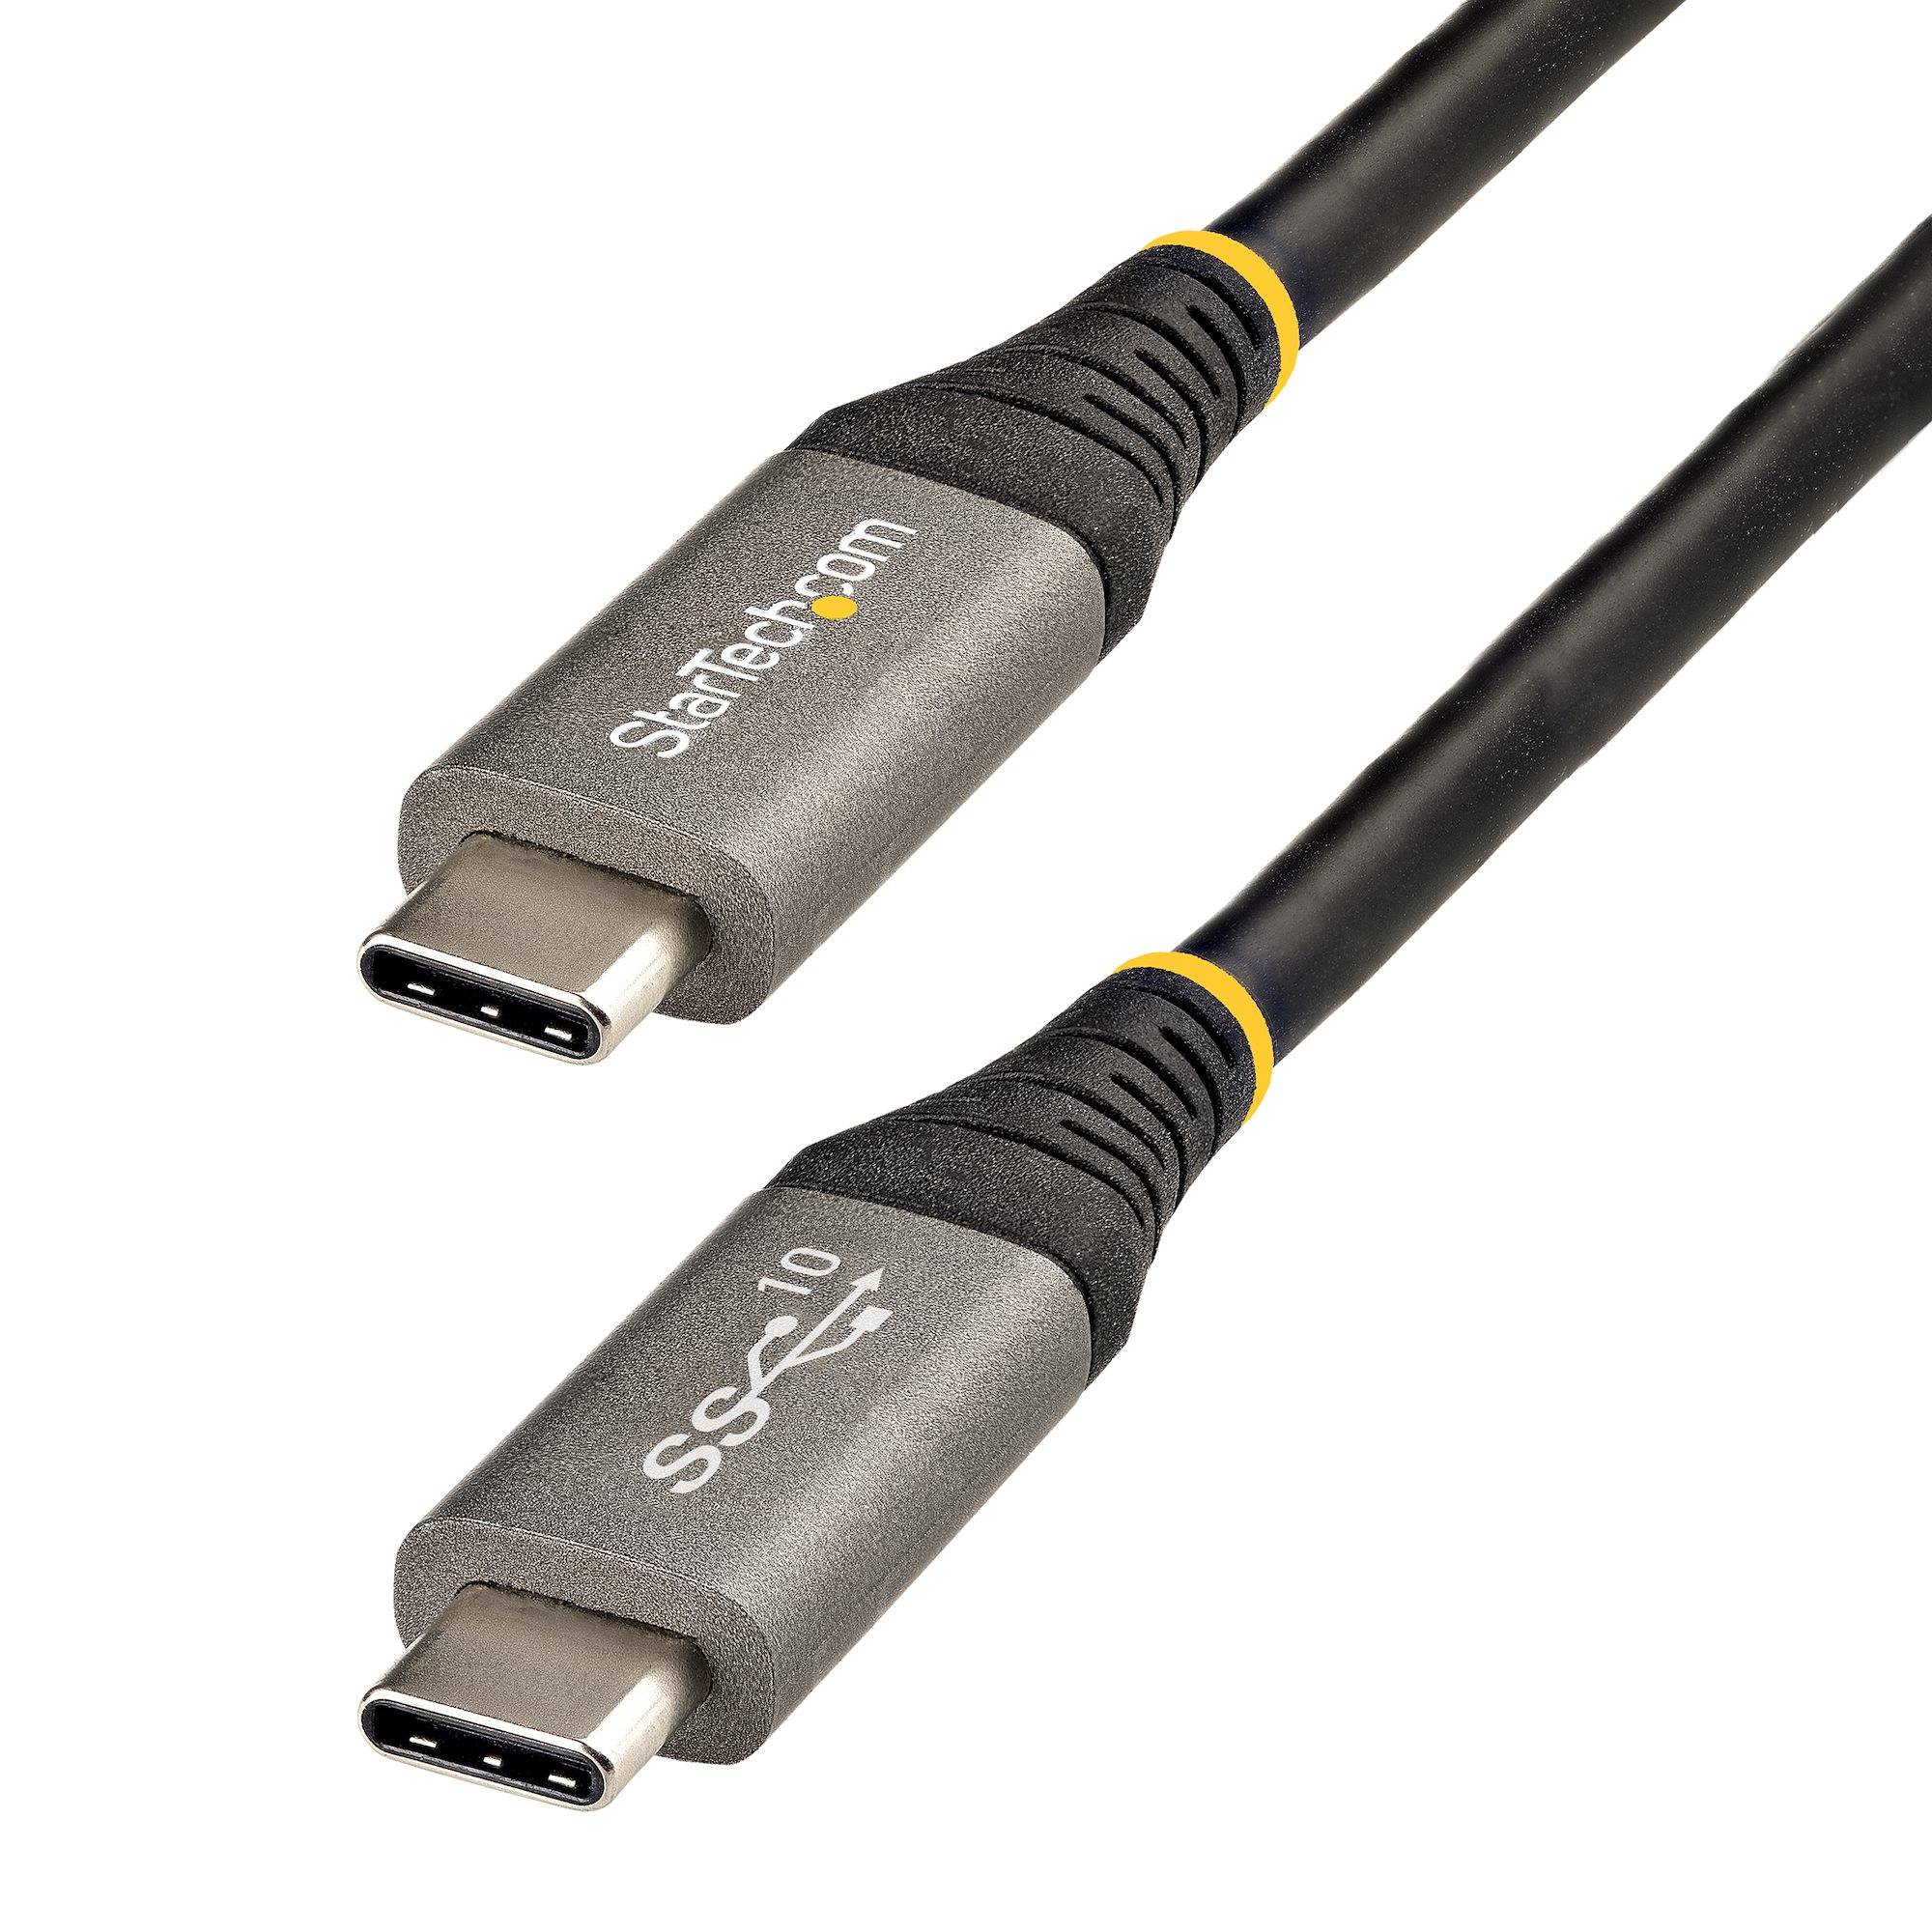 Rca Informatique - Image du produit : 1M USB C CABLE 10GBPS USB-IF CERTIFIED - 3.3FT